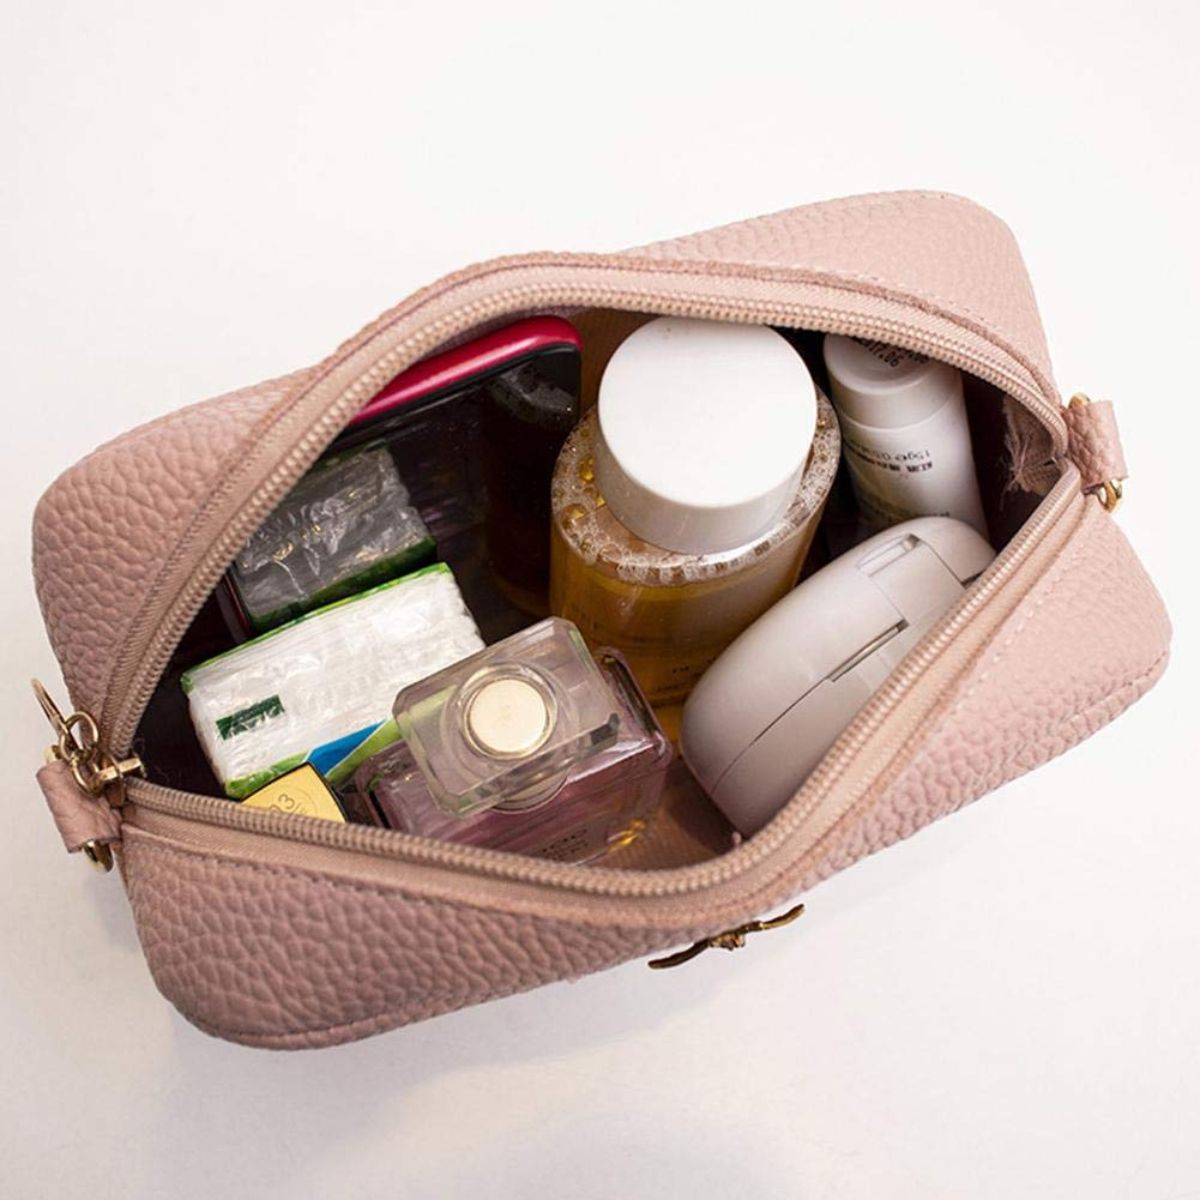 Deluxity bag Vegan queen bee purse | eBay